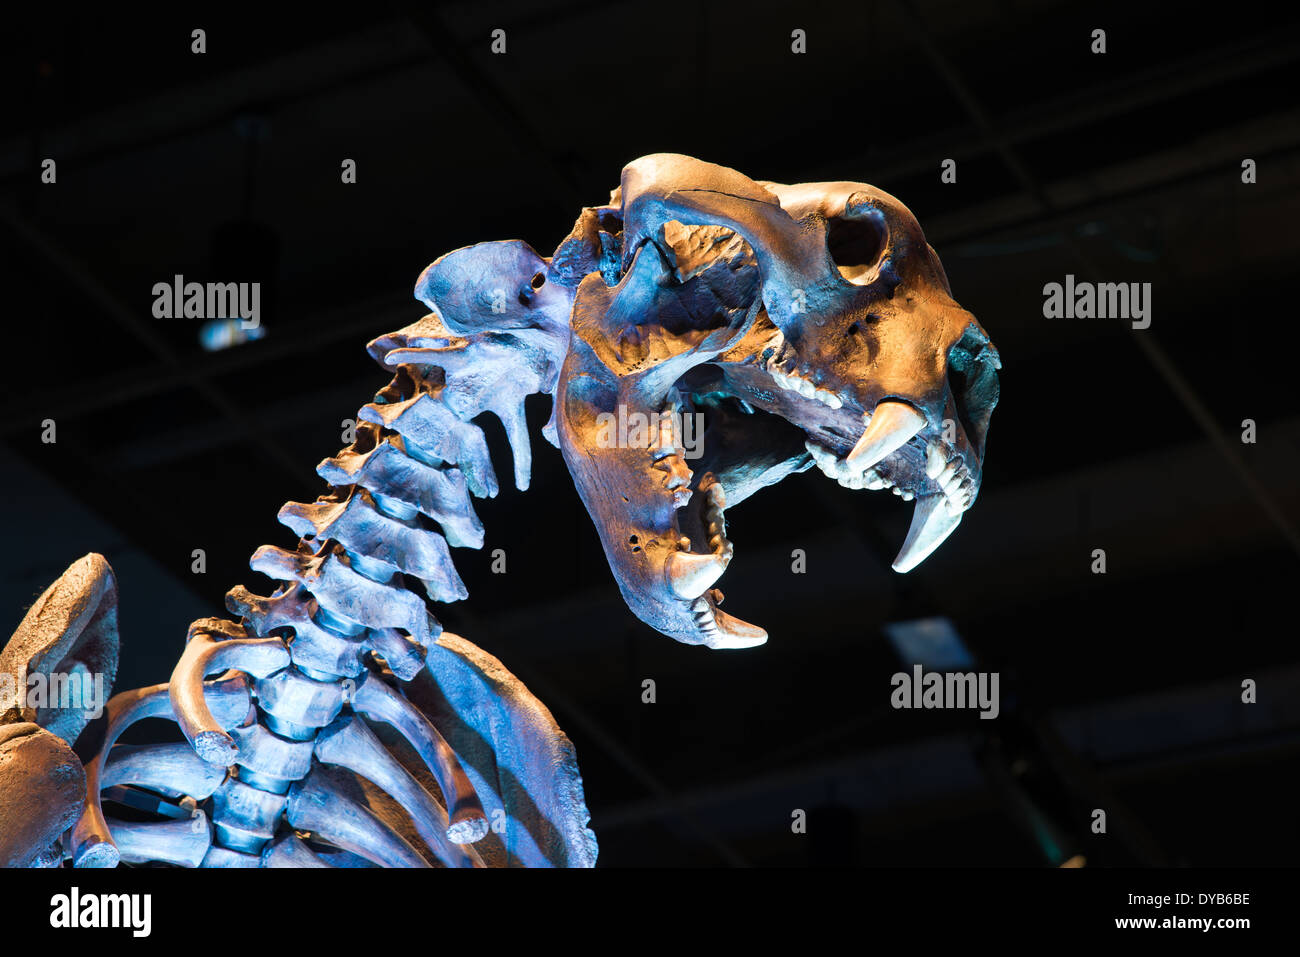 Fossile Skelett eines Kurz-faced Bear (arctodus), eine ausgestorbene tragen in Nordamerika während des Pleistozän gelebt. Stockfoto